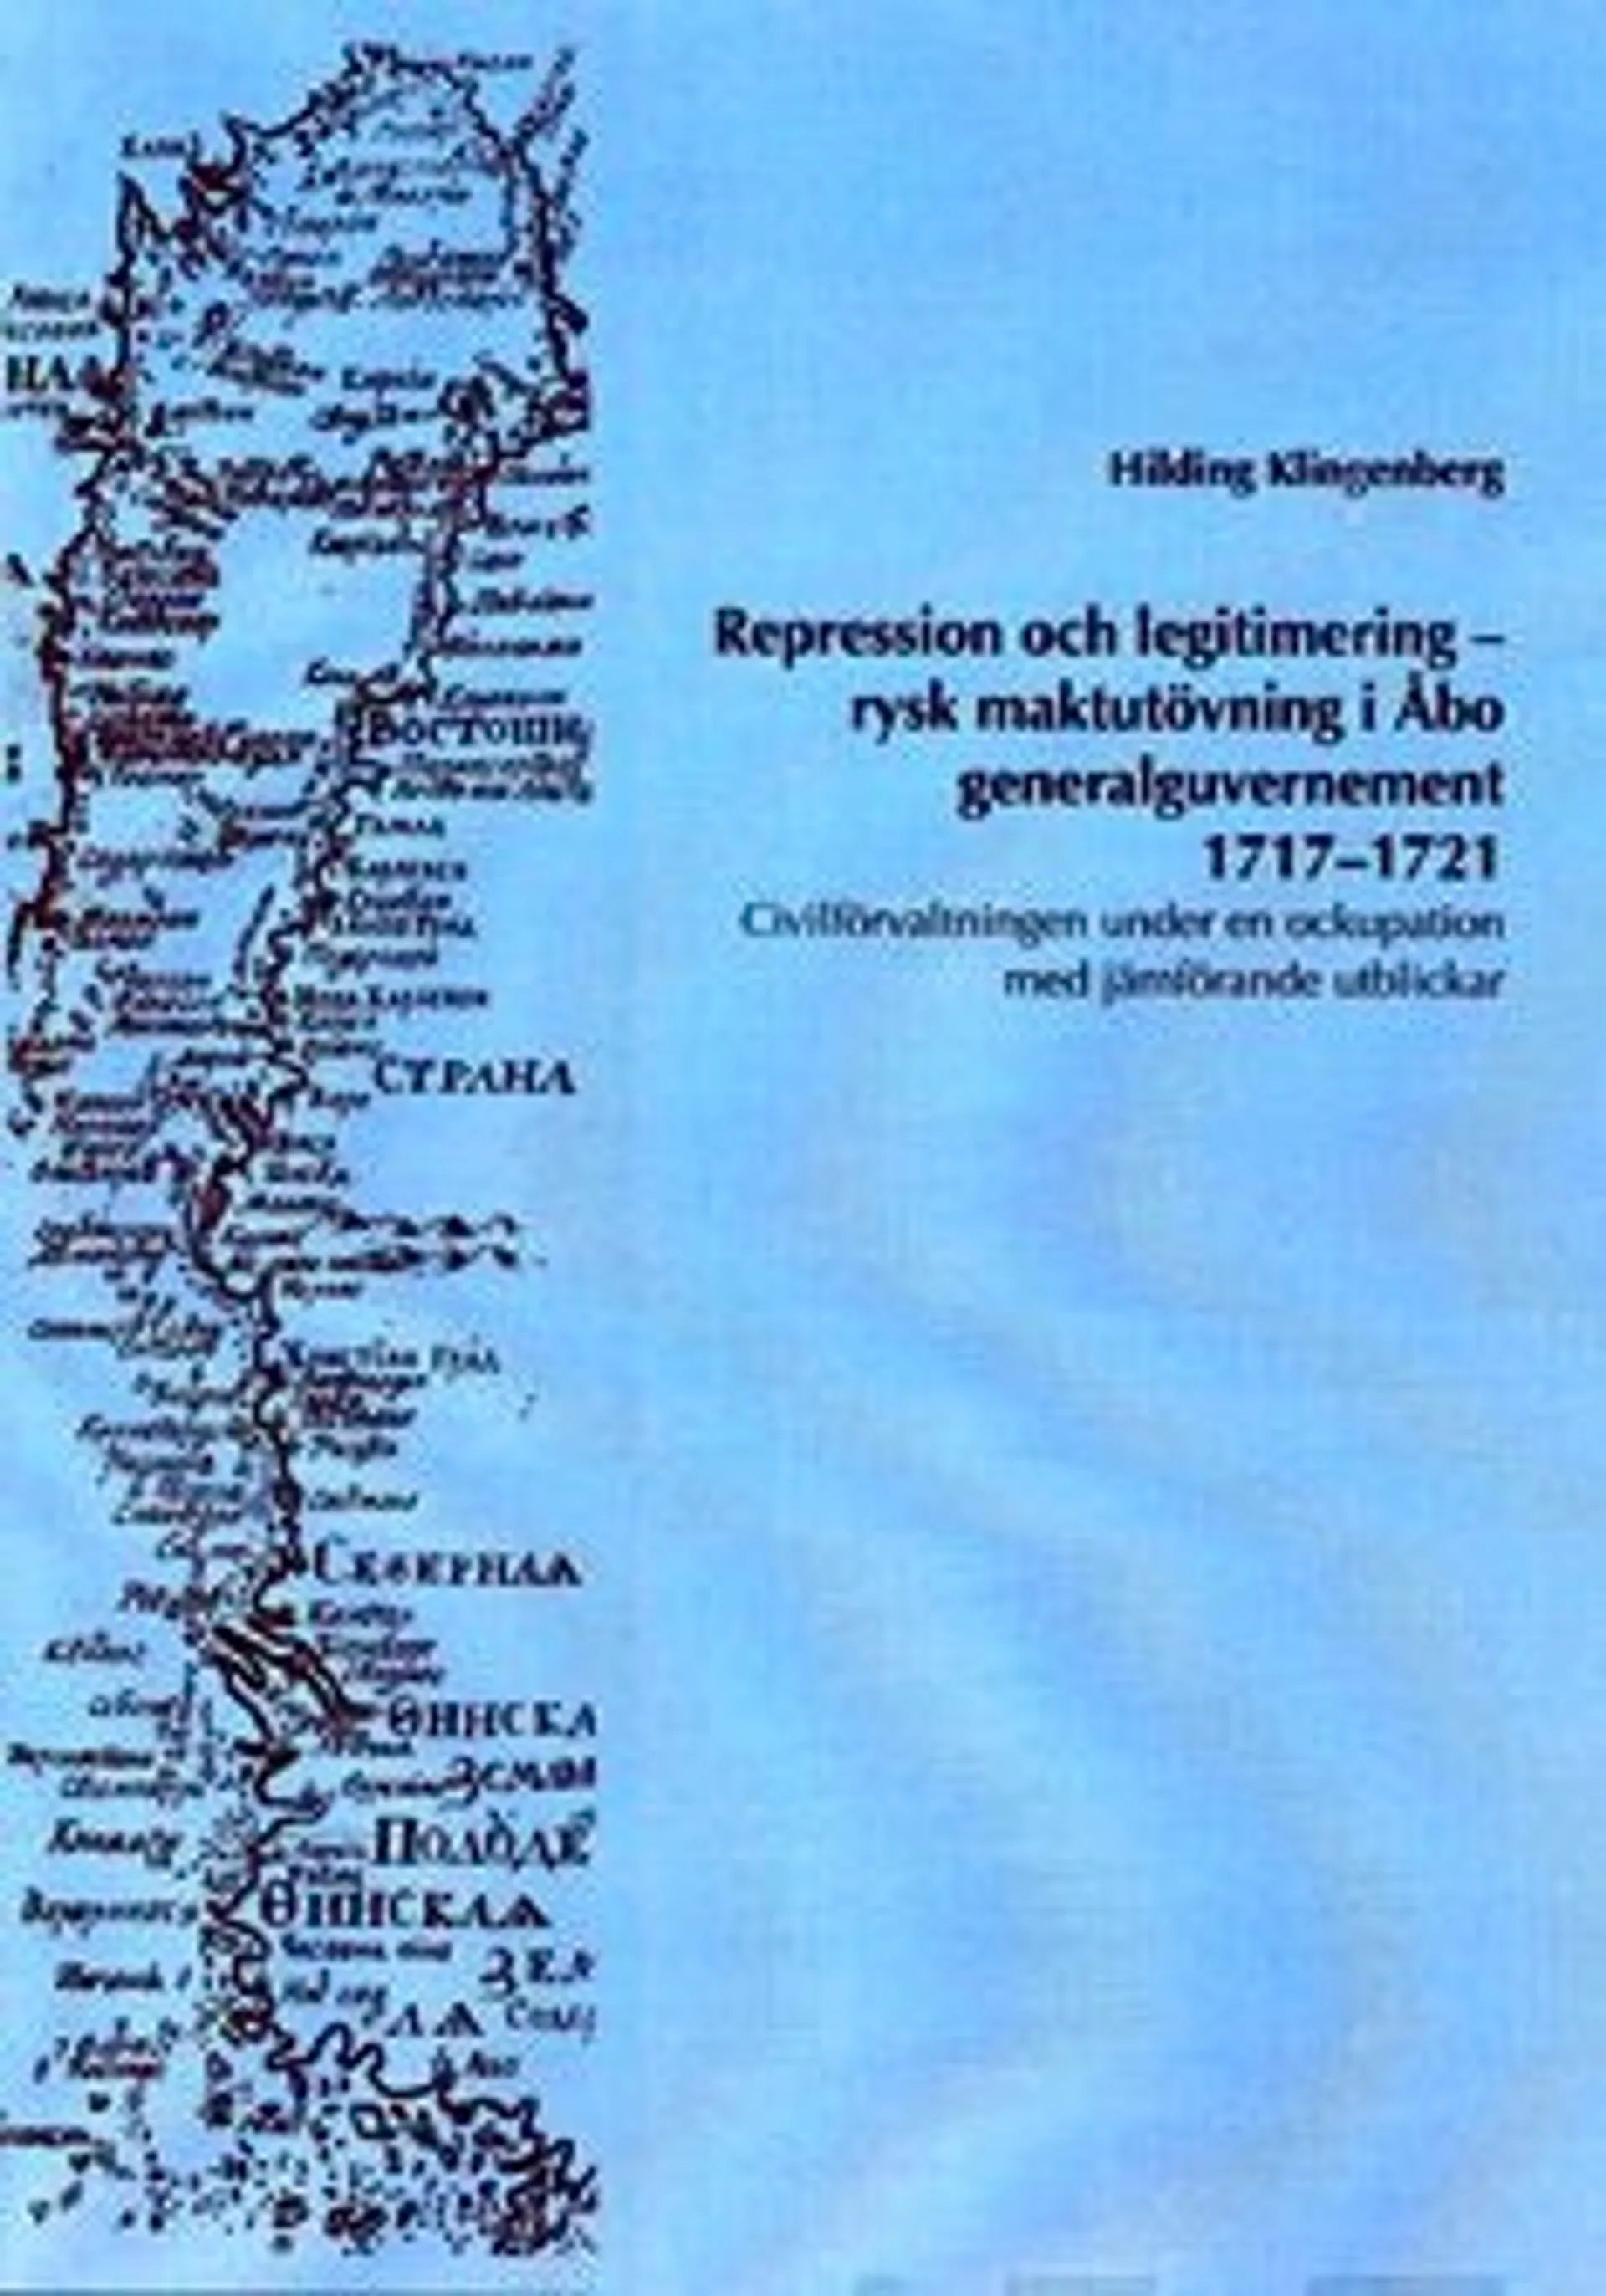 Klingenberg, Repression och legitimering - rysk maktutövning i Åbo generalguvernement 1717-1721